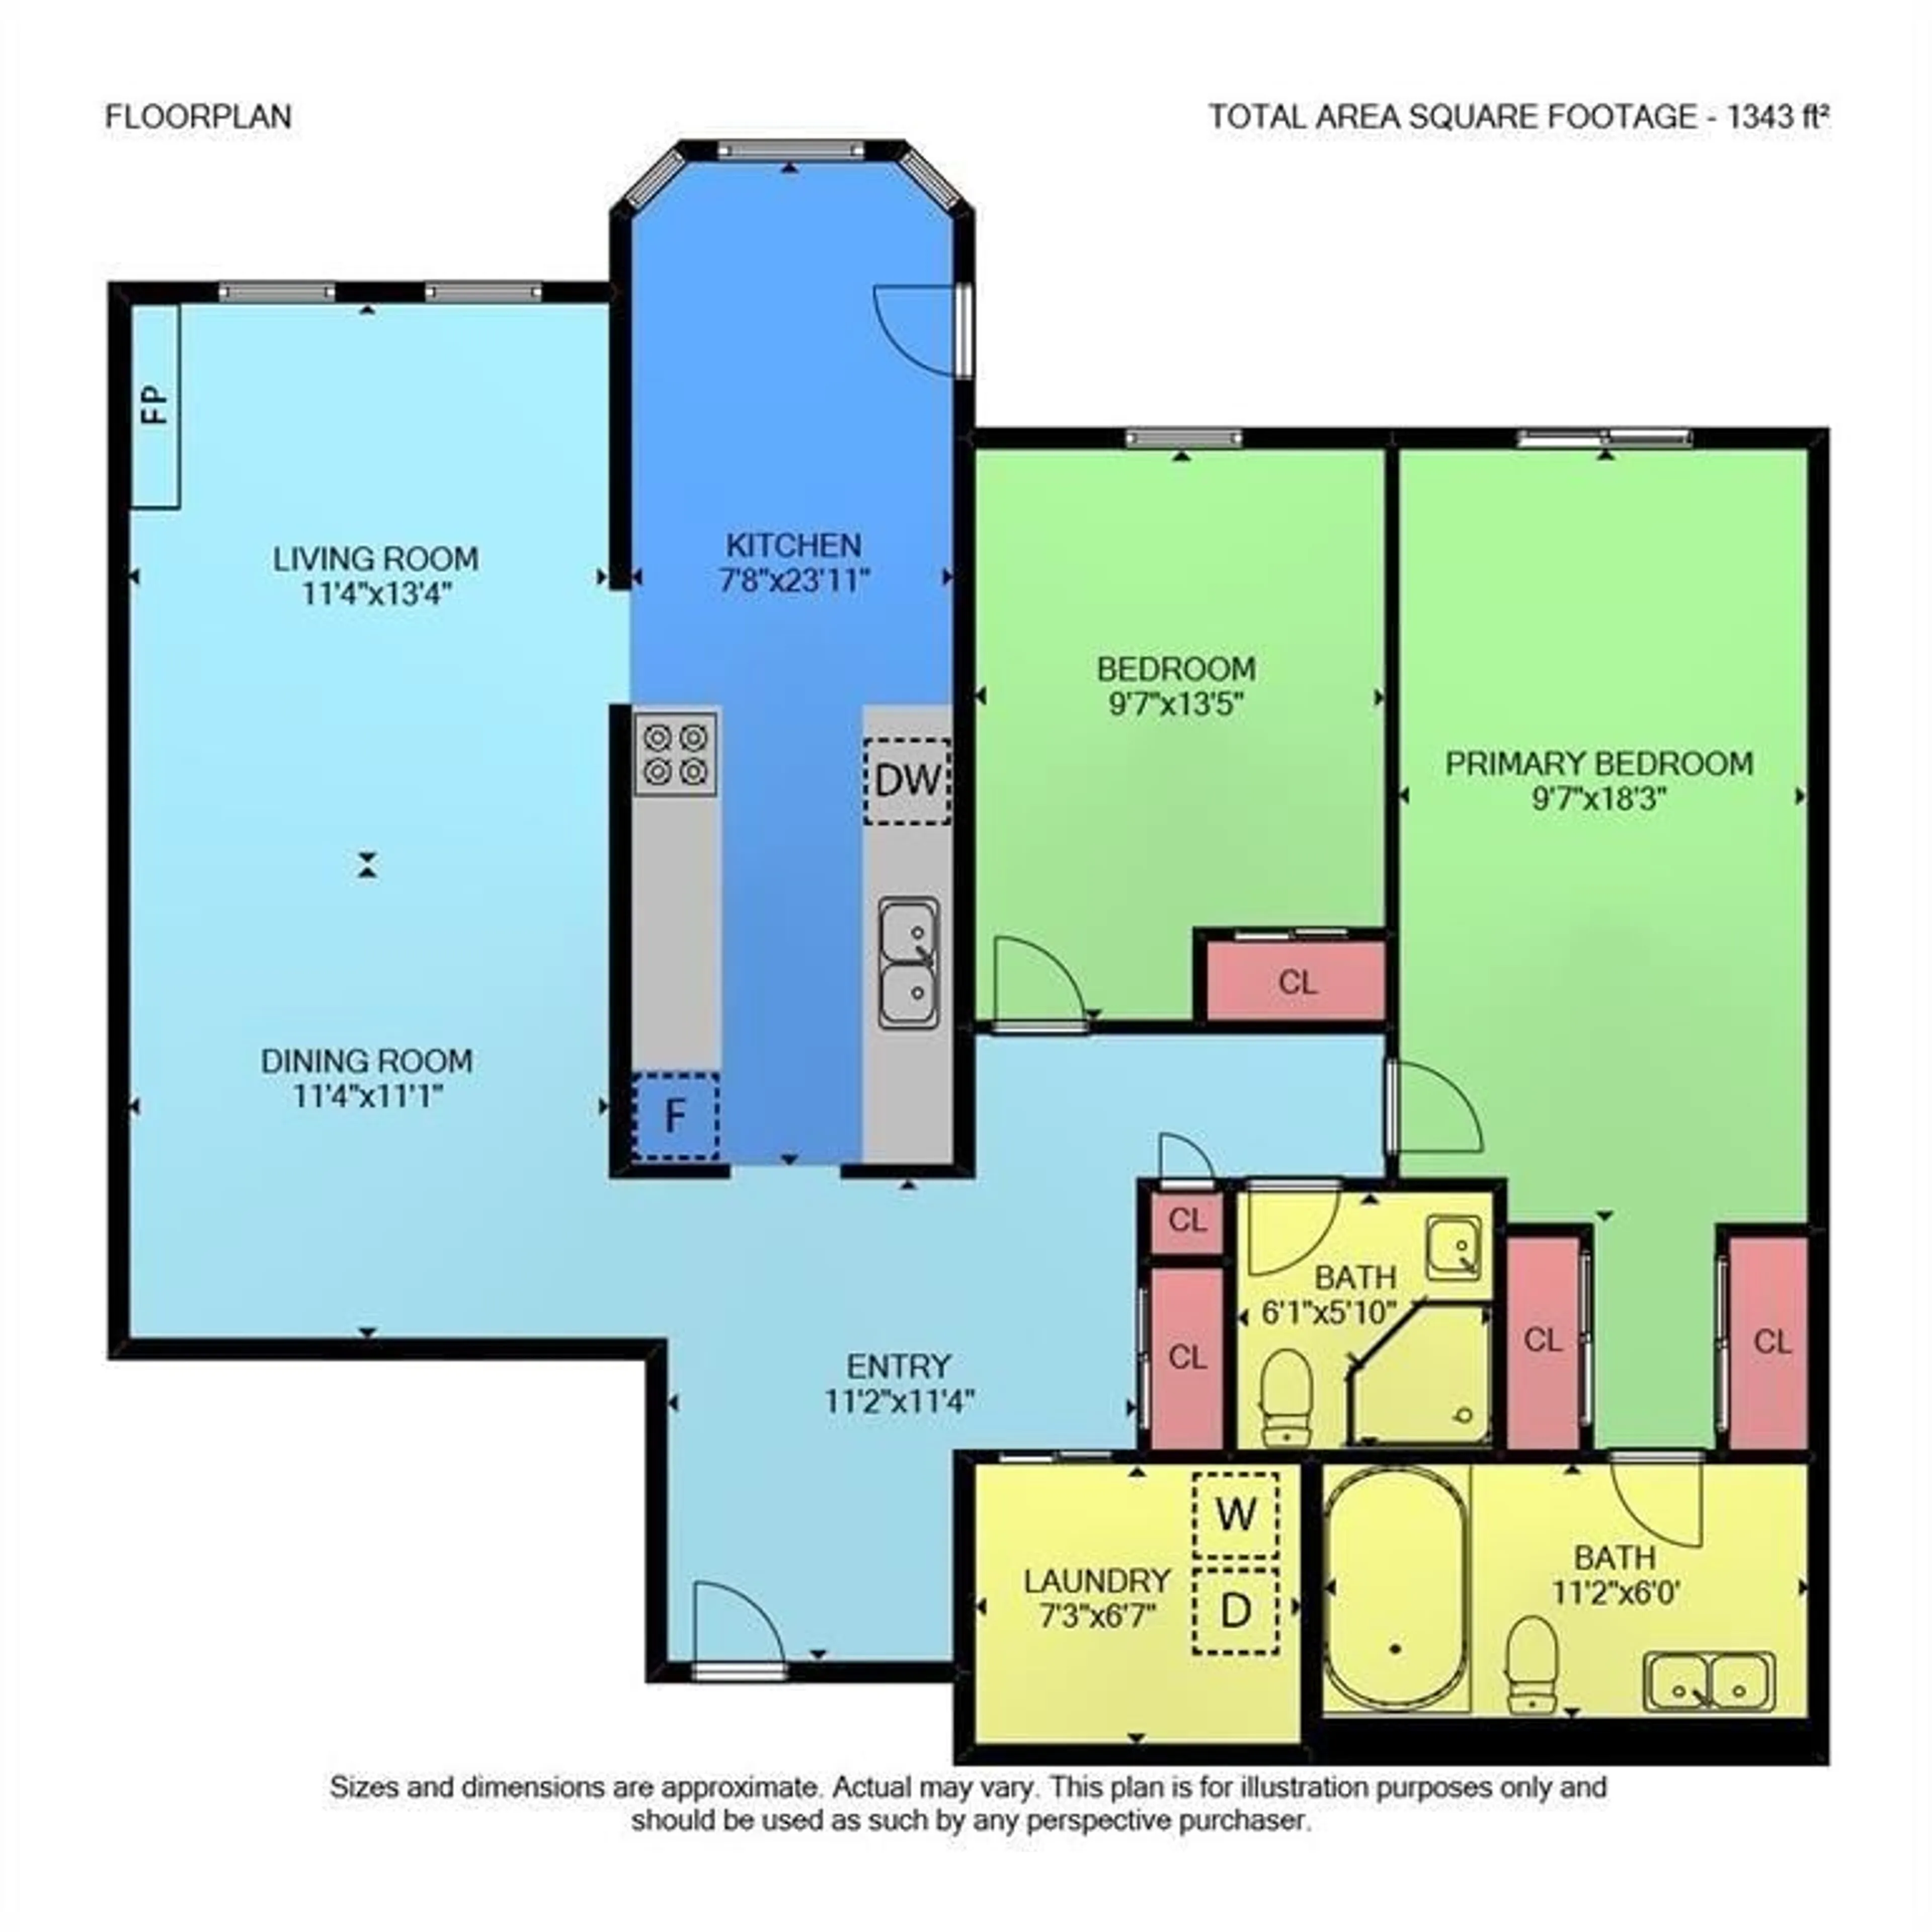 Floor plan for 970 GOLF LINKS Rd #201, Ancaster Ontario L9K 1J8